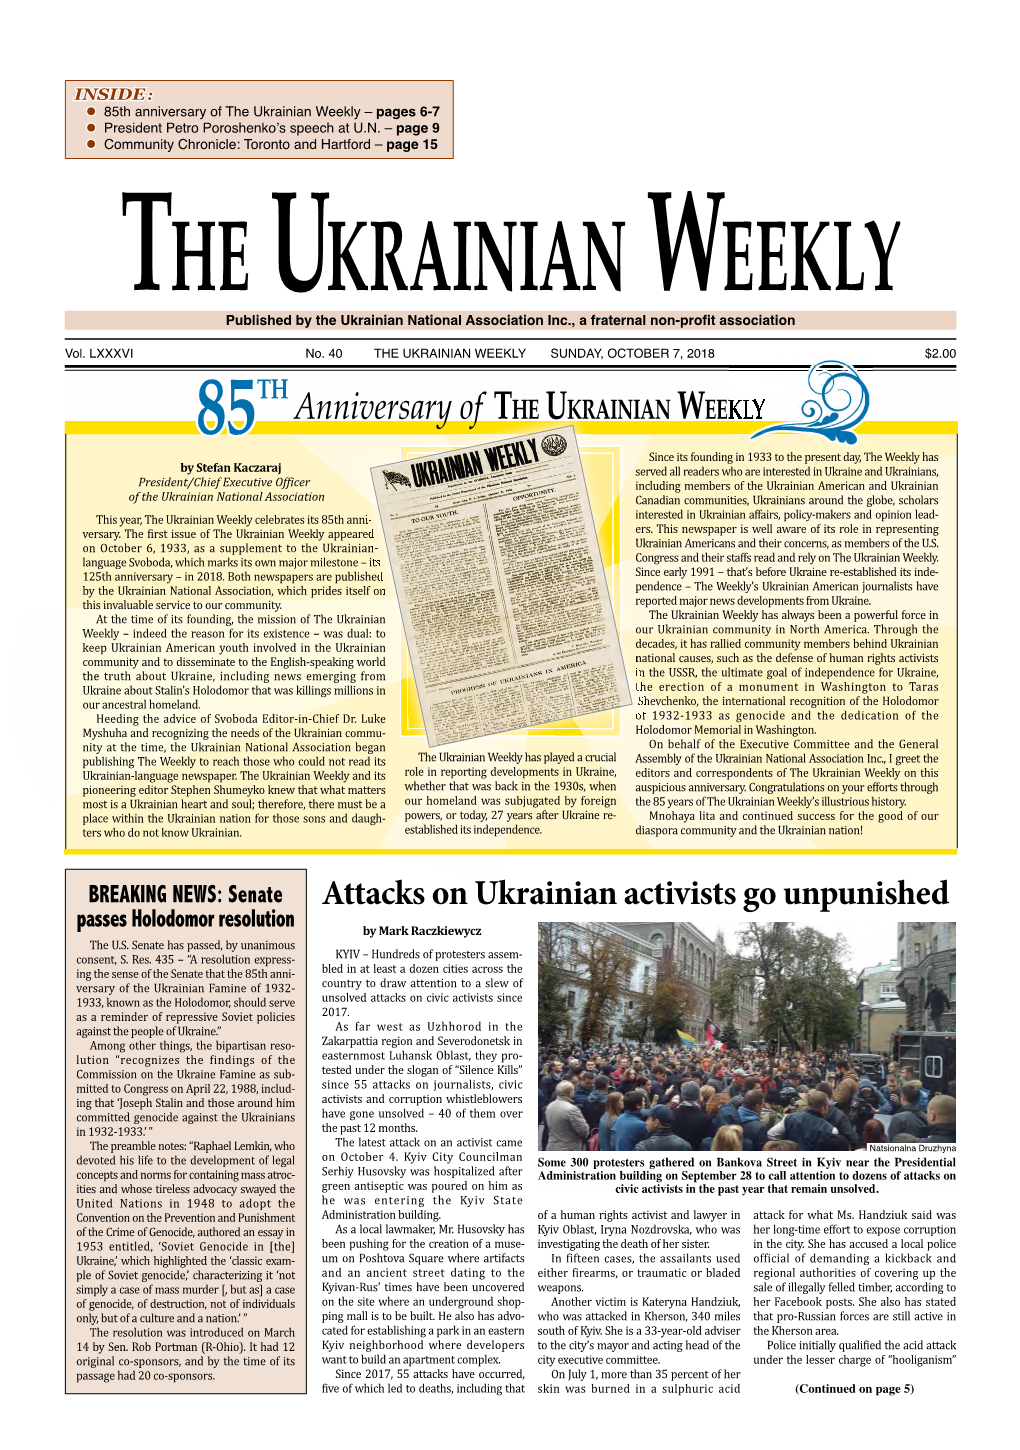 The Ukrainian Weekly, 2018